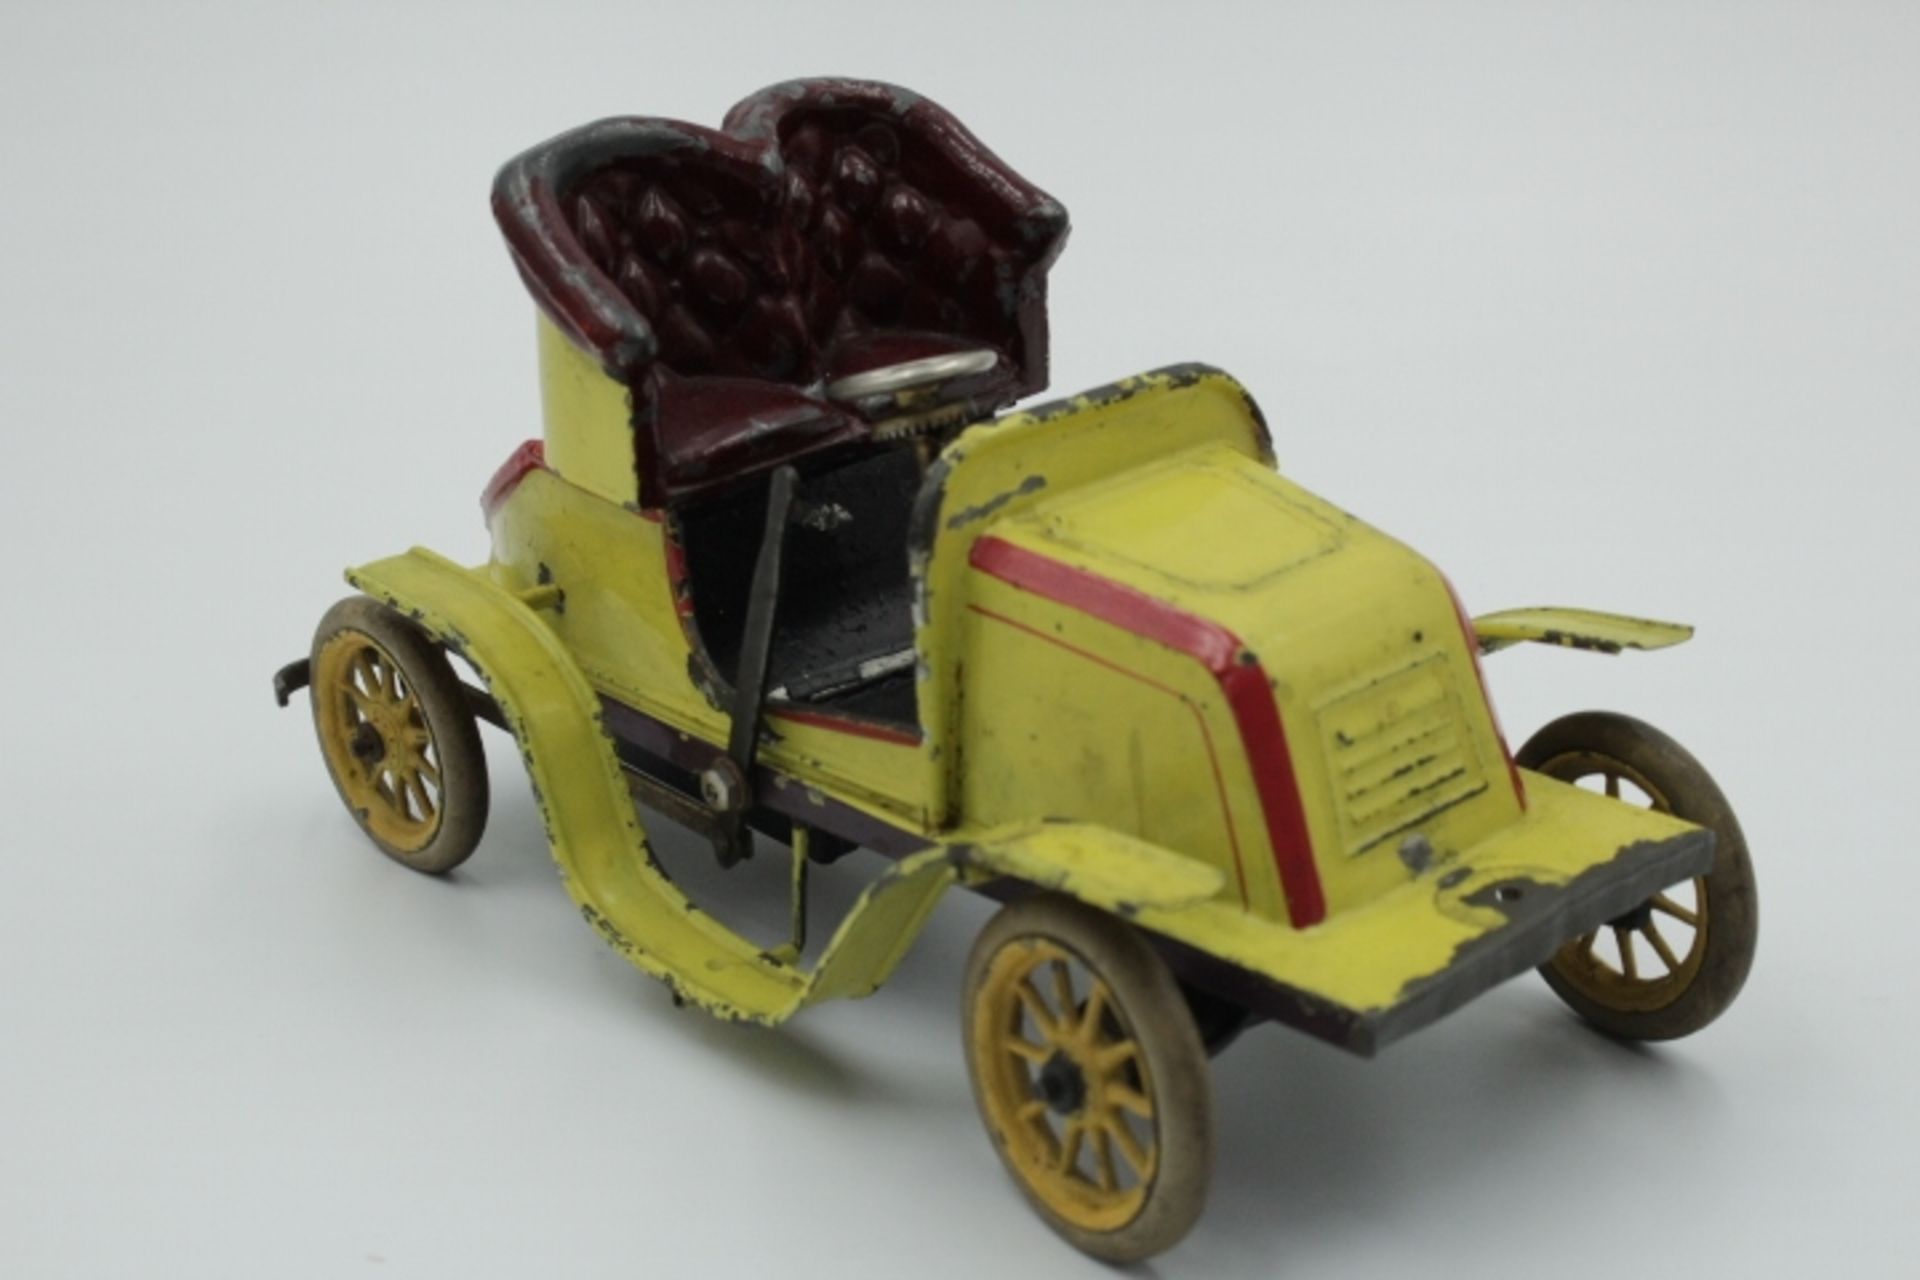 Bing Uralt Auto Blech Farbig gefasst wohl um 1910 Federwerk nicht geprüft,Gummibereifung bespielter - Bild 3 aus 3